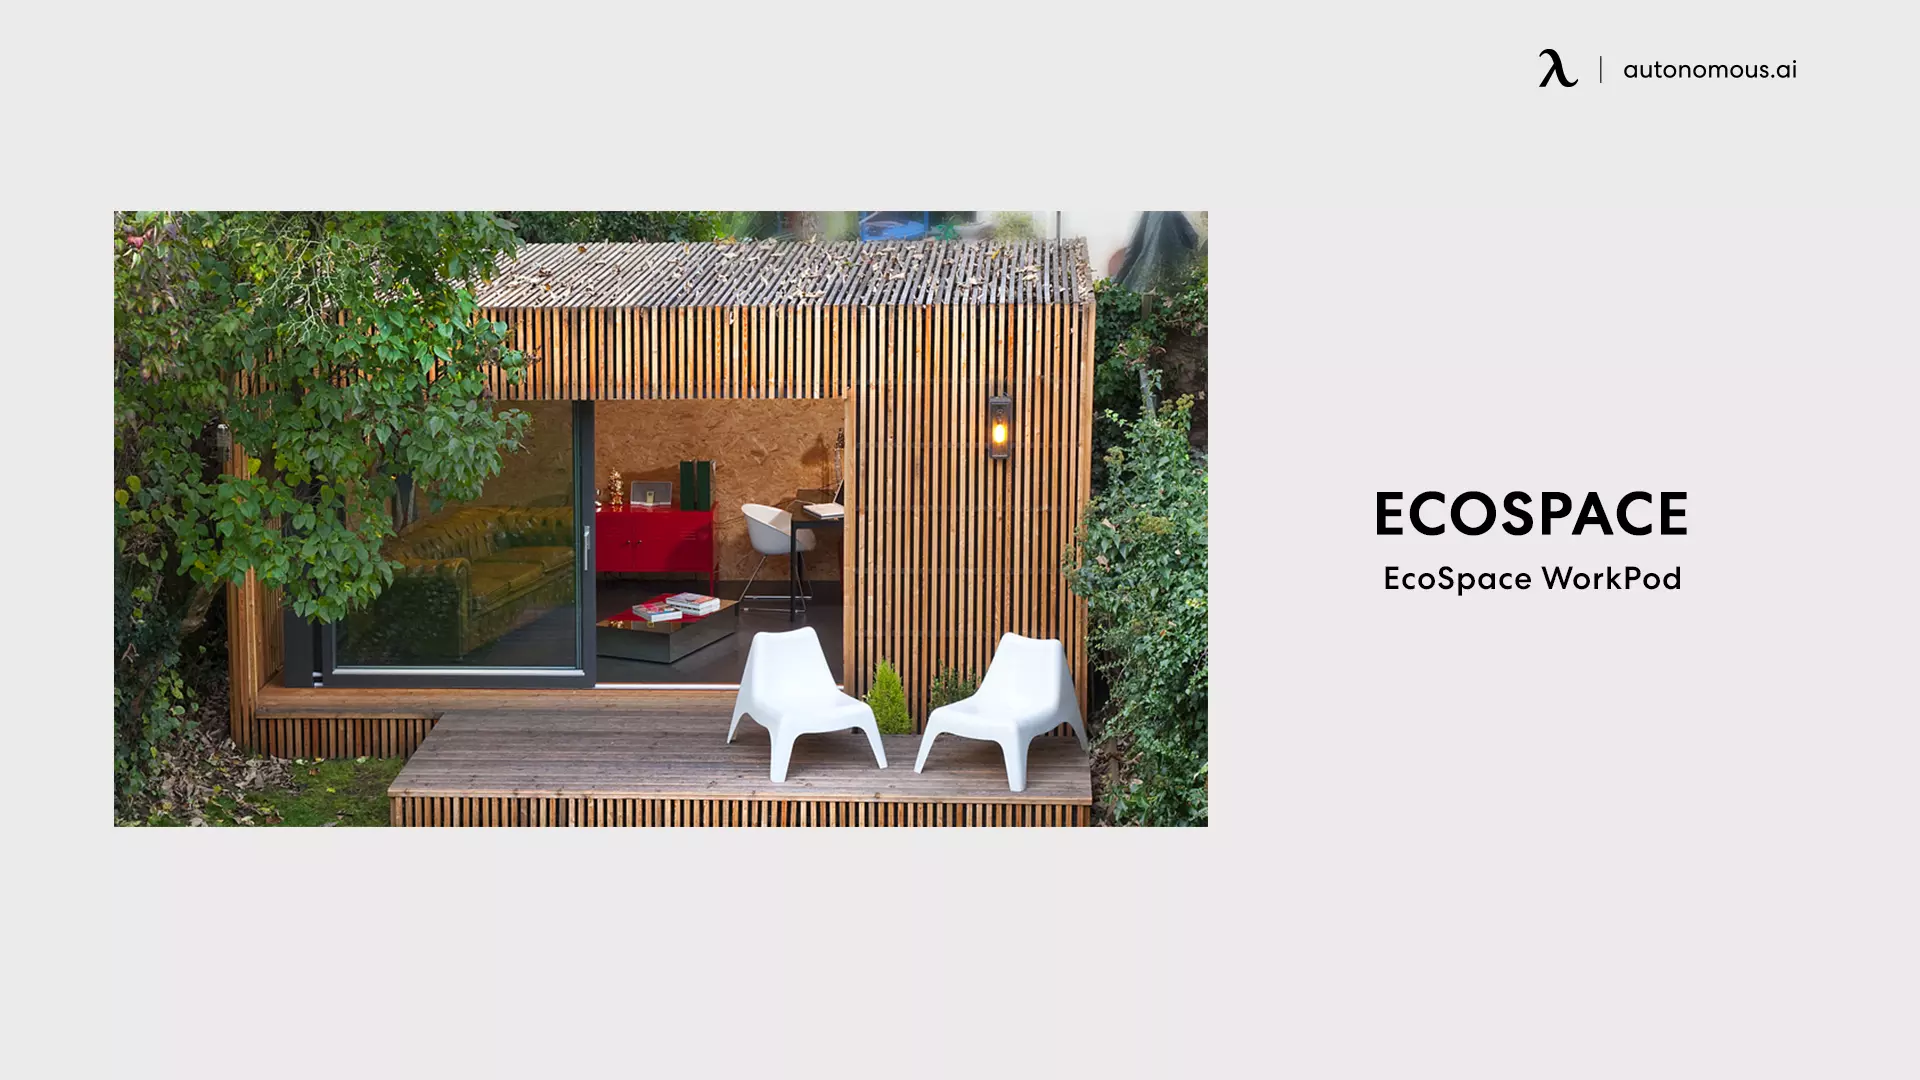 EcoSpace WorkPod - modern accessory dwelling unit